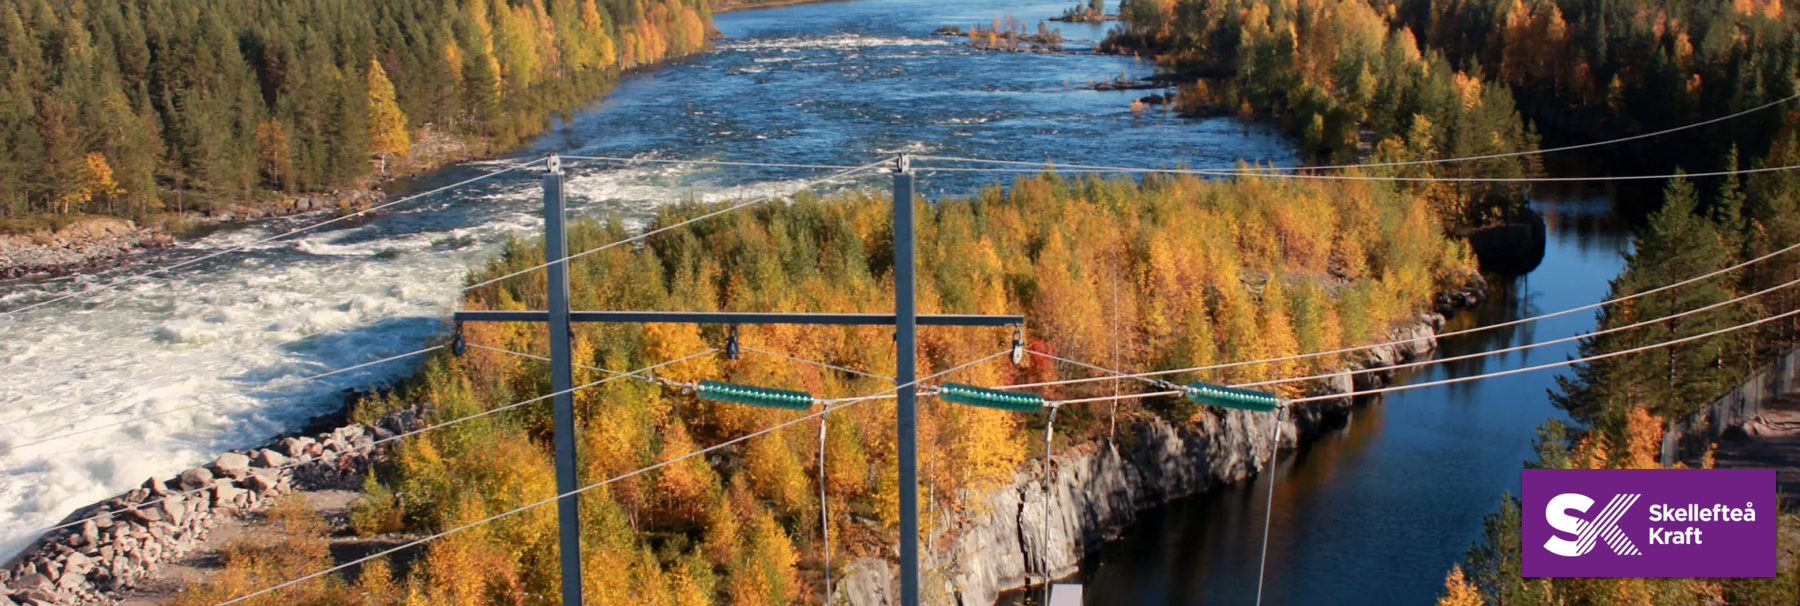 100% förnybar el till inköpspris hos Skellefteå Kraft!